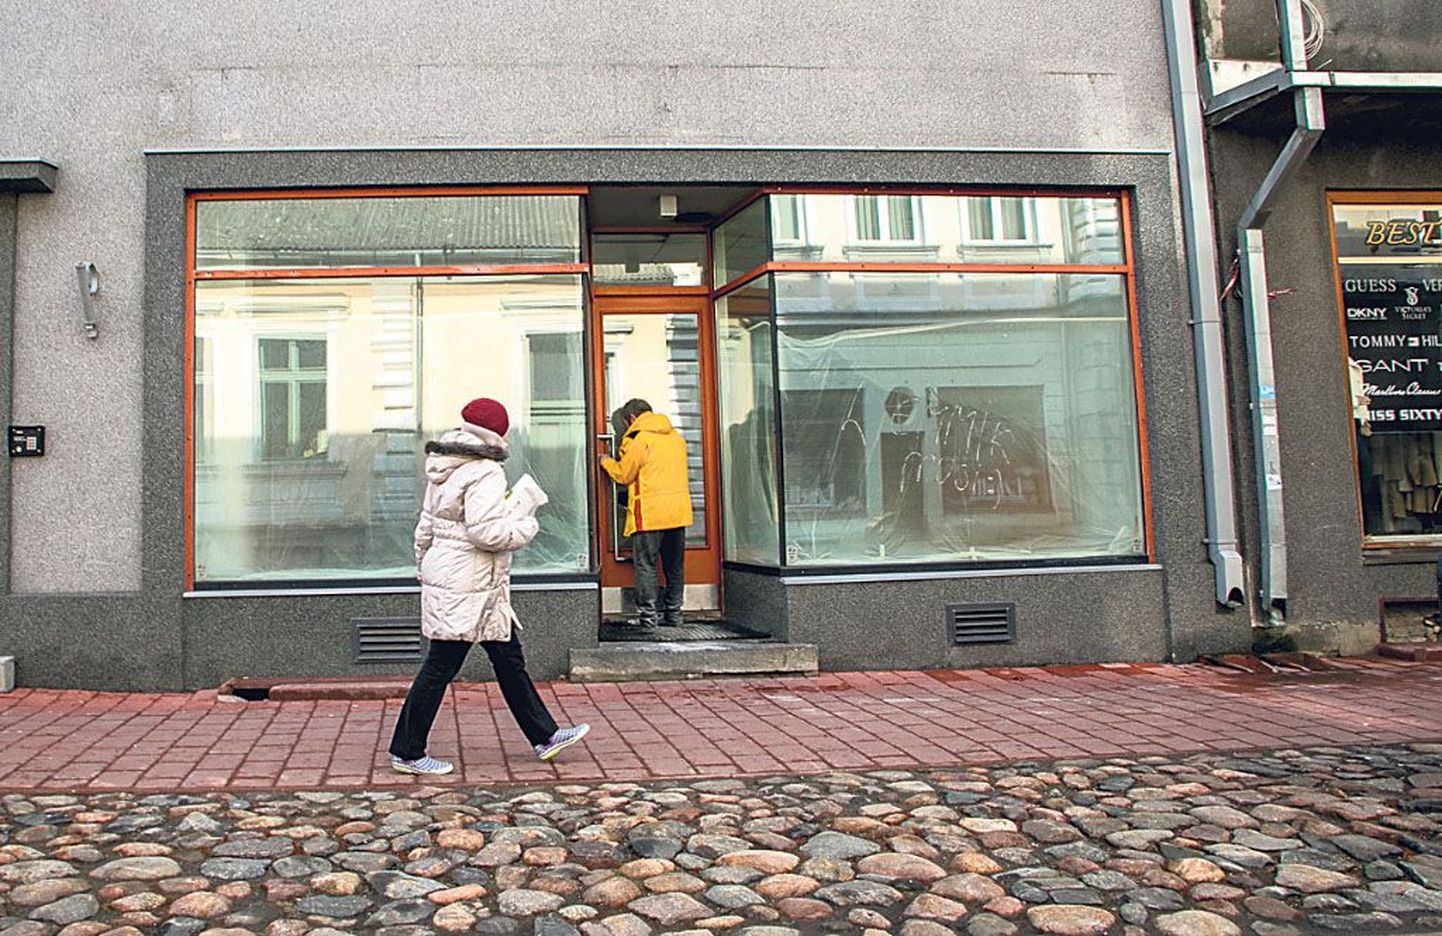 Talvel näis, et Rüütli tänav jookseb äridest tühjaks. Kevad on Pärnu peatänavale uut elu toomas: Rüütli 39 majas näiteks avatakse aasiapärane söögikoht.